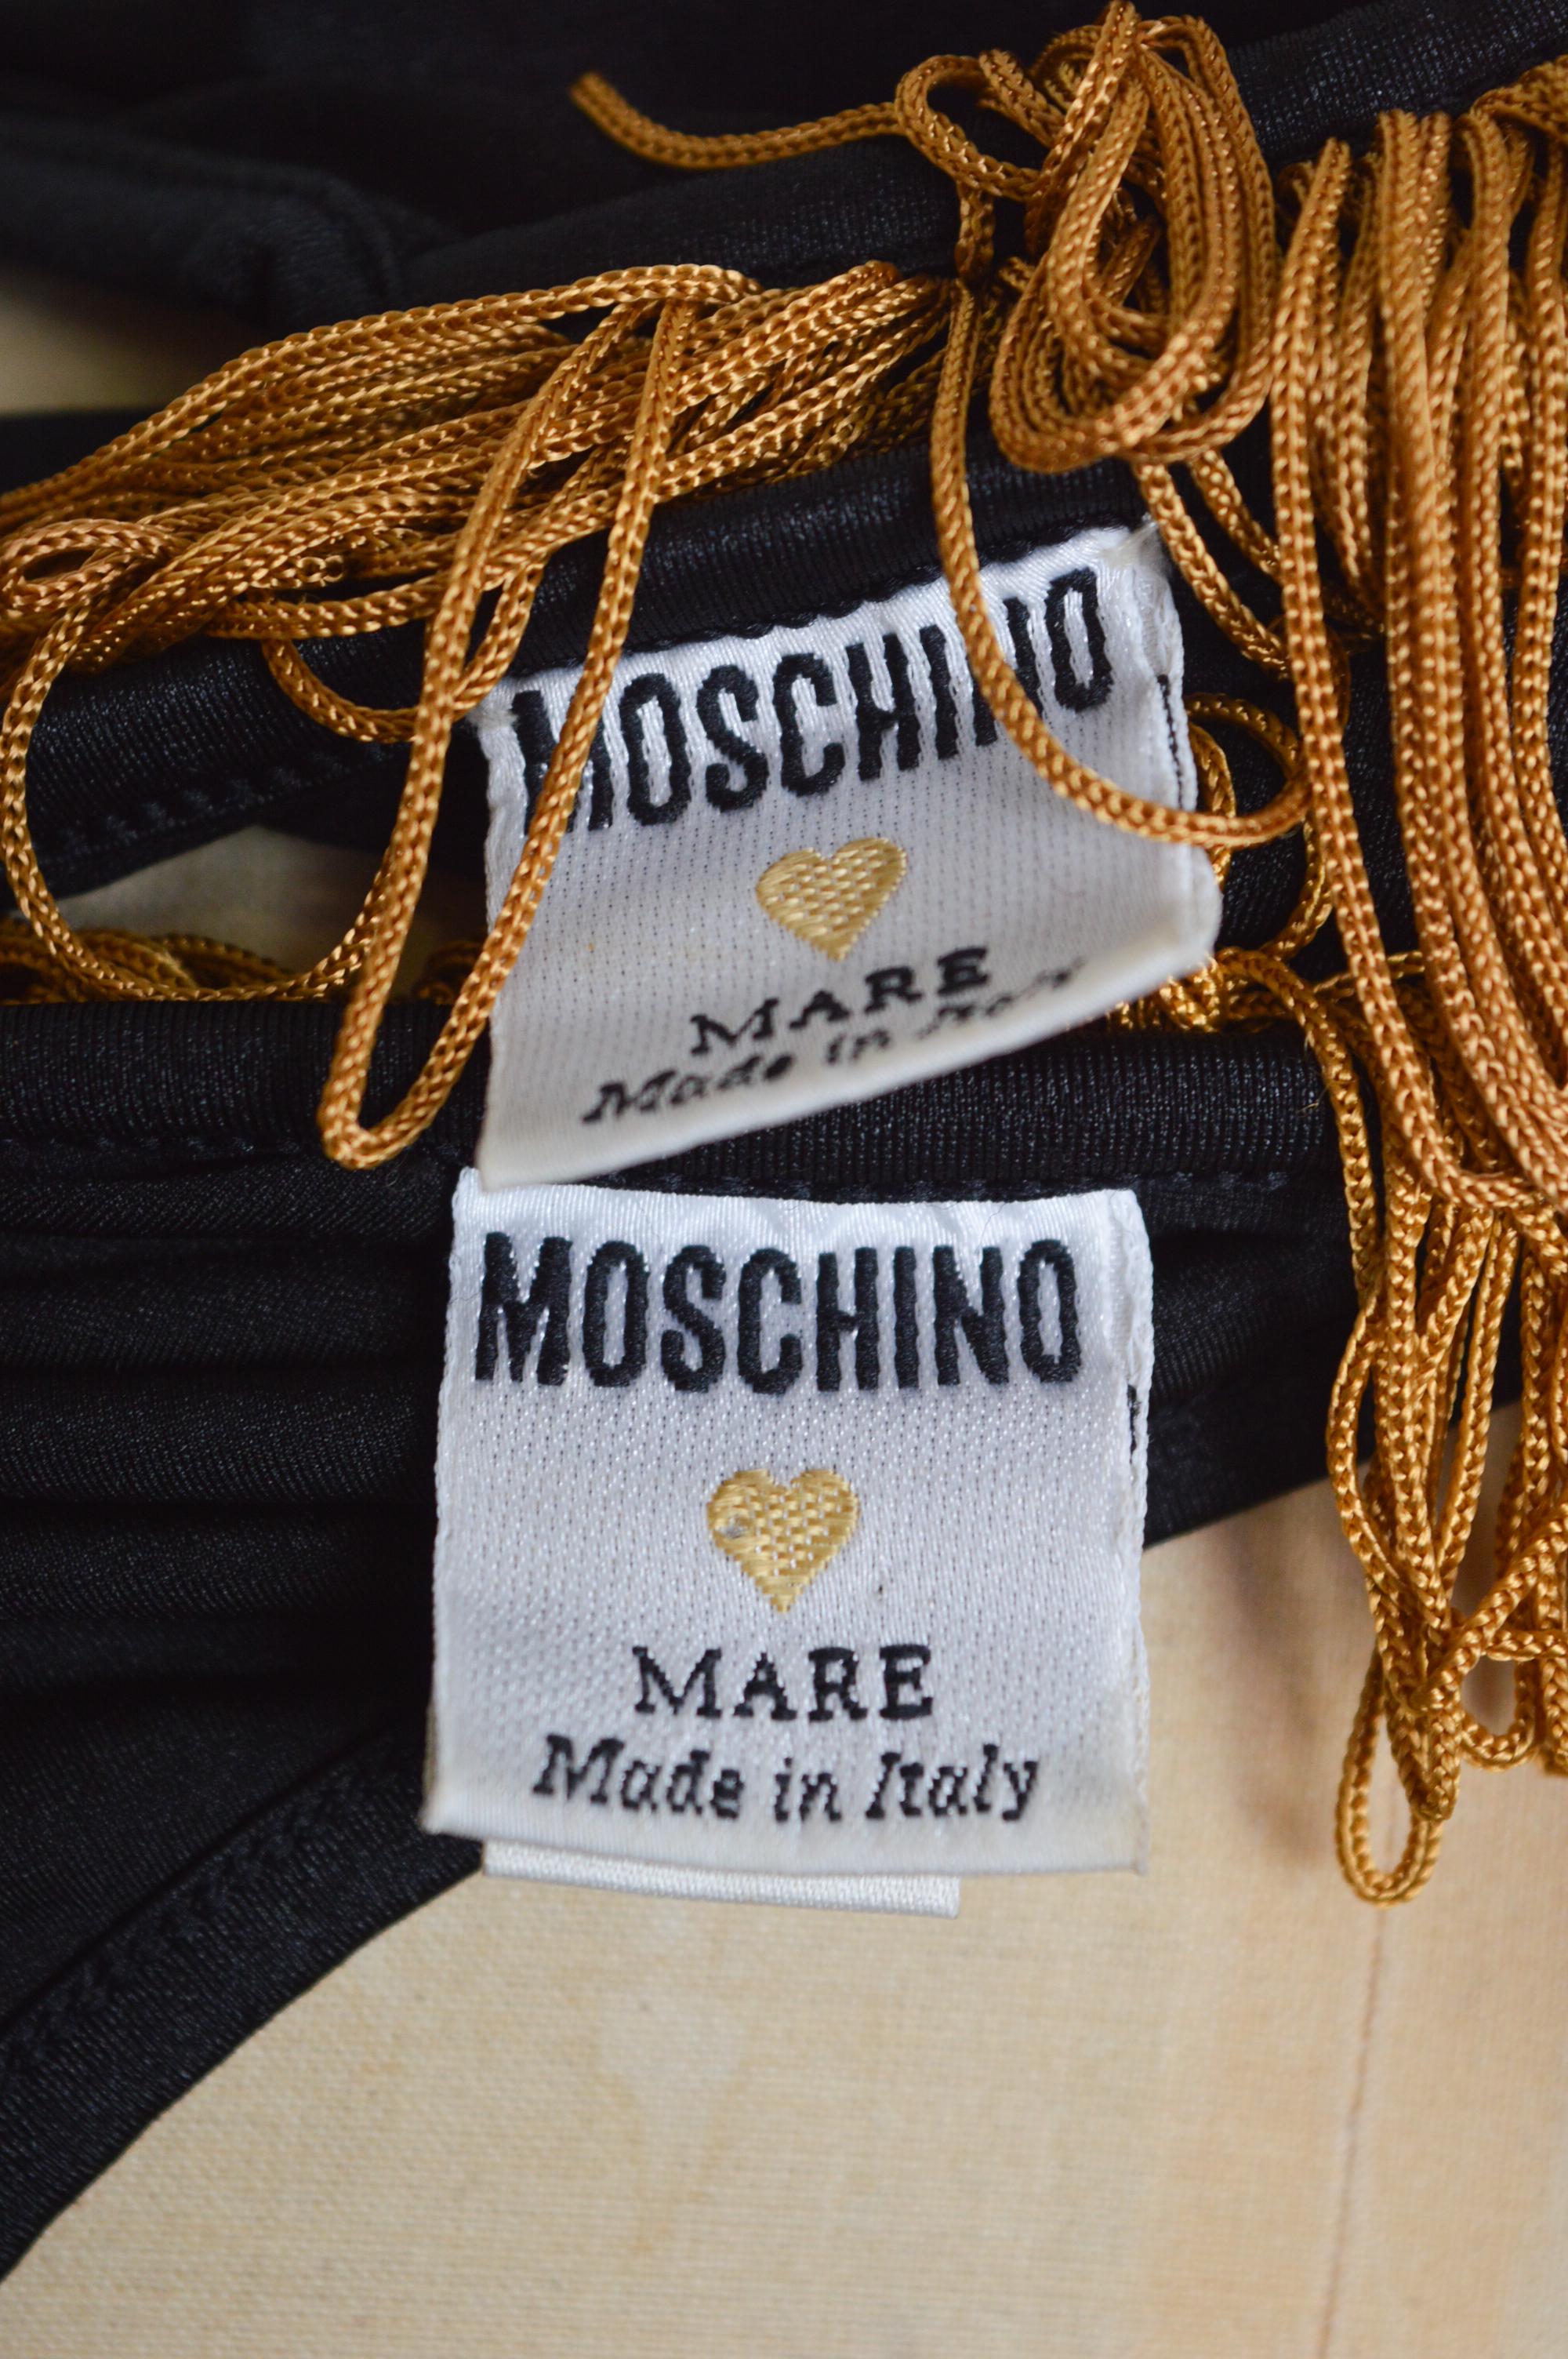 Fabelhaftes Vintage Moschino Showgirl Badeanzug Set in Schwarz & Gold aus den frühen 1990er Jahren, entworfen von Franco Moschino.  

GEFERTIGT IN ITALIEN.  

Dieses epische Bikini-Set besteht aus einem fransenbesetzten Bralet mit sternförmig